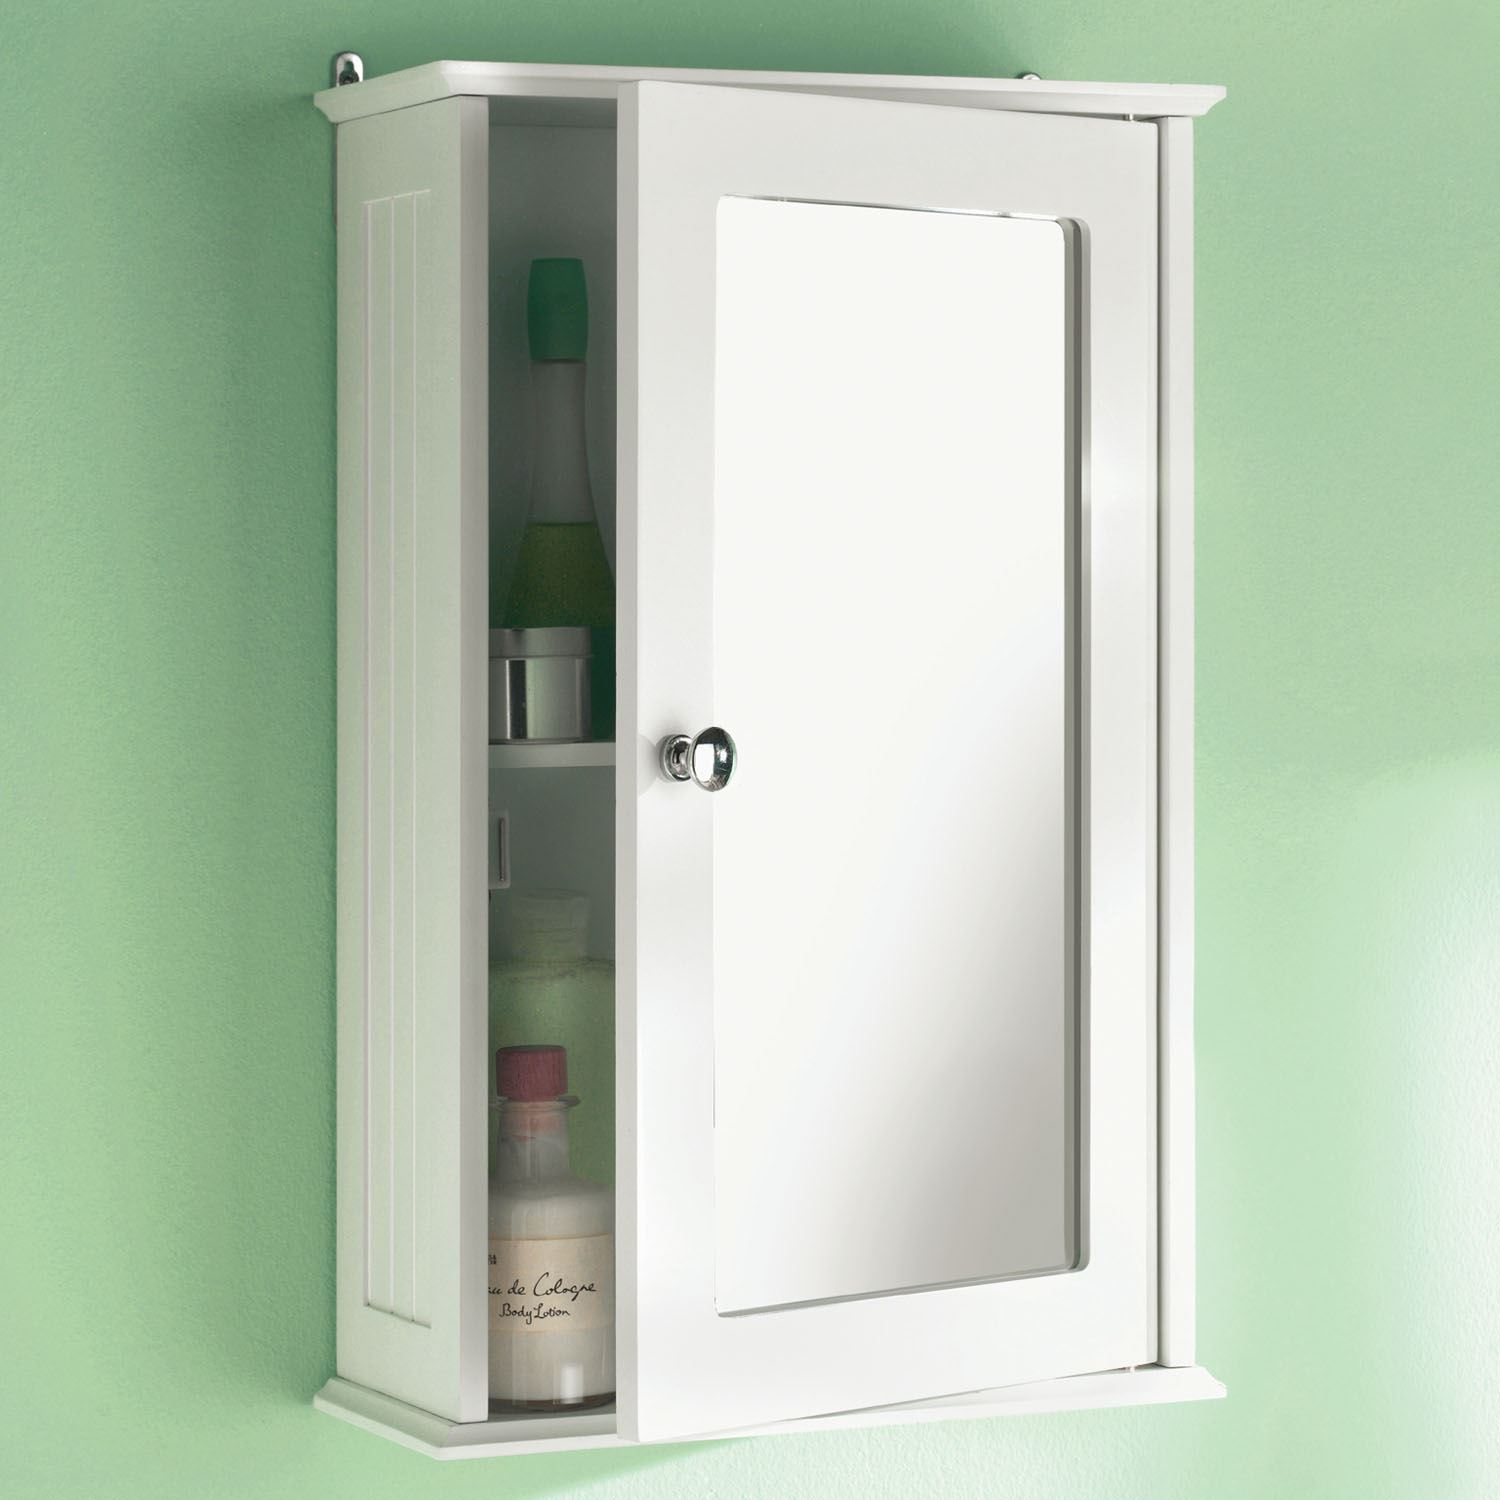 Single Mirror Door Bathroom Cabinet Wooden Indoor Wall Mountable intended for size 1500 X 1500